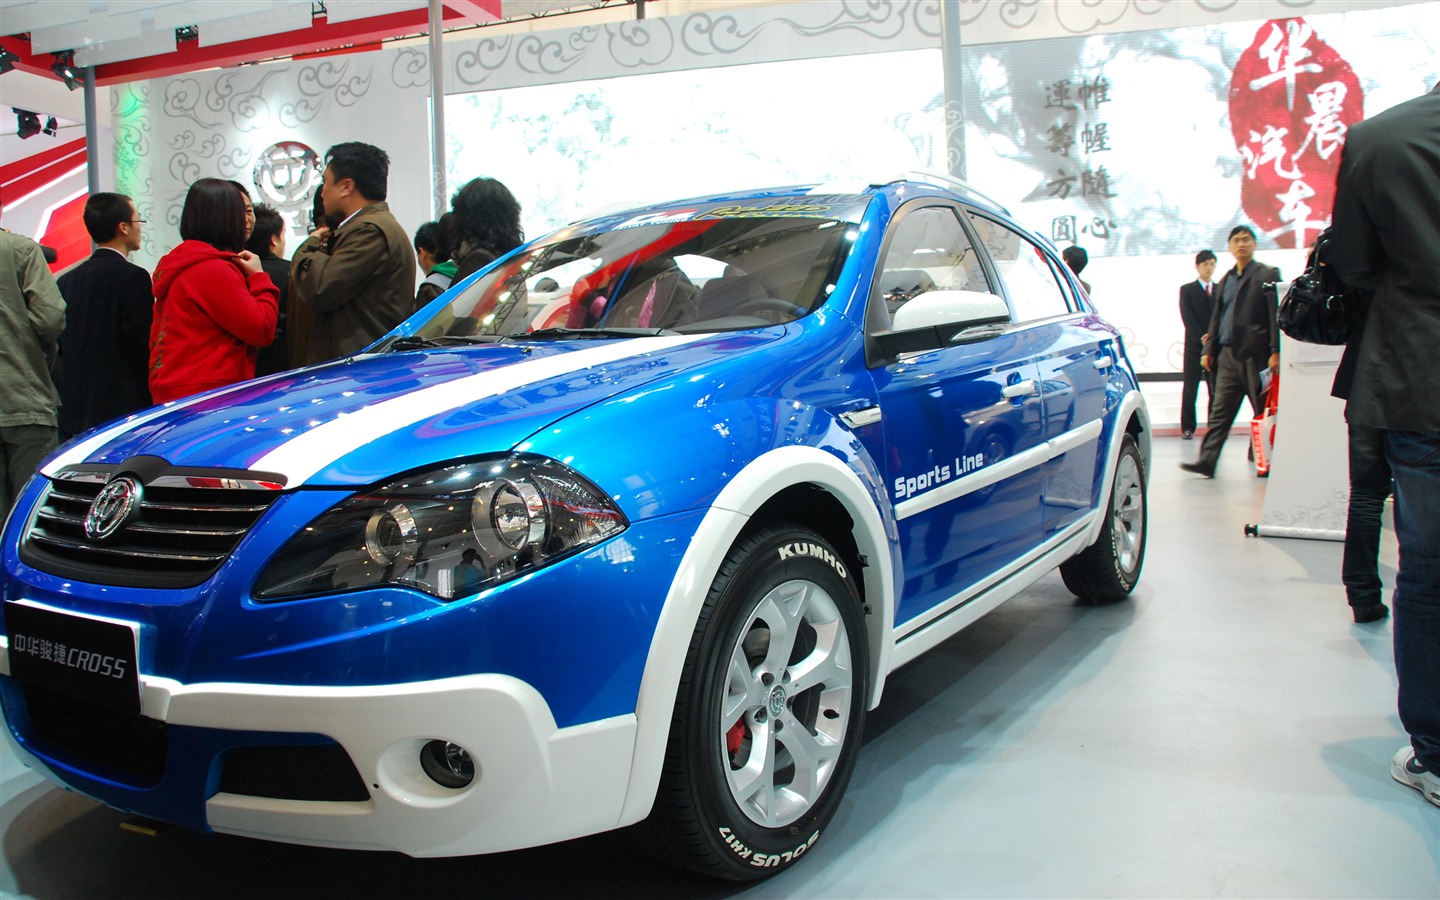 2010北京国际车展(一) (z321x123作品)21 - 1440x900